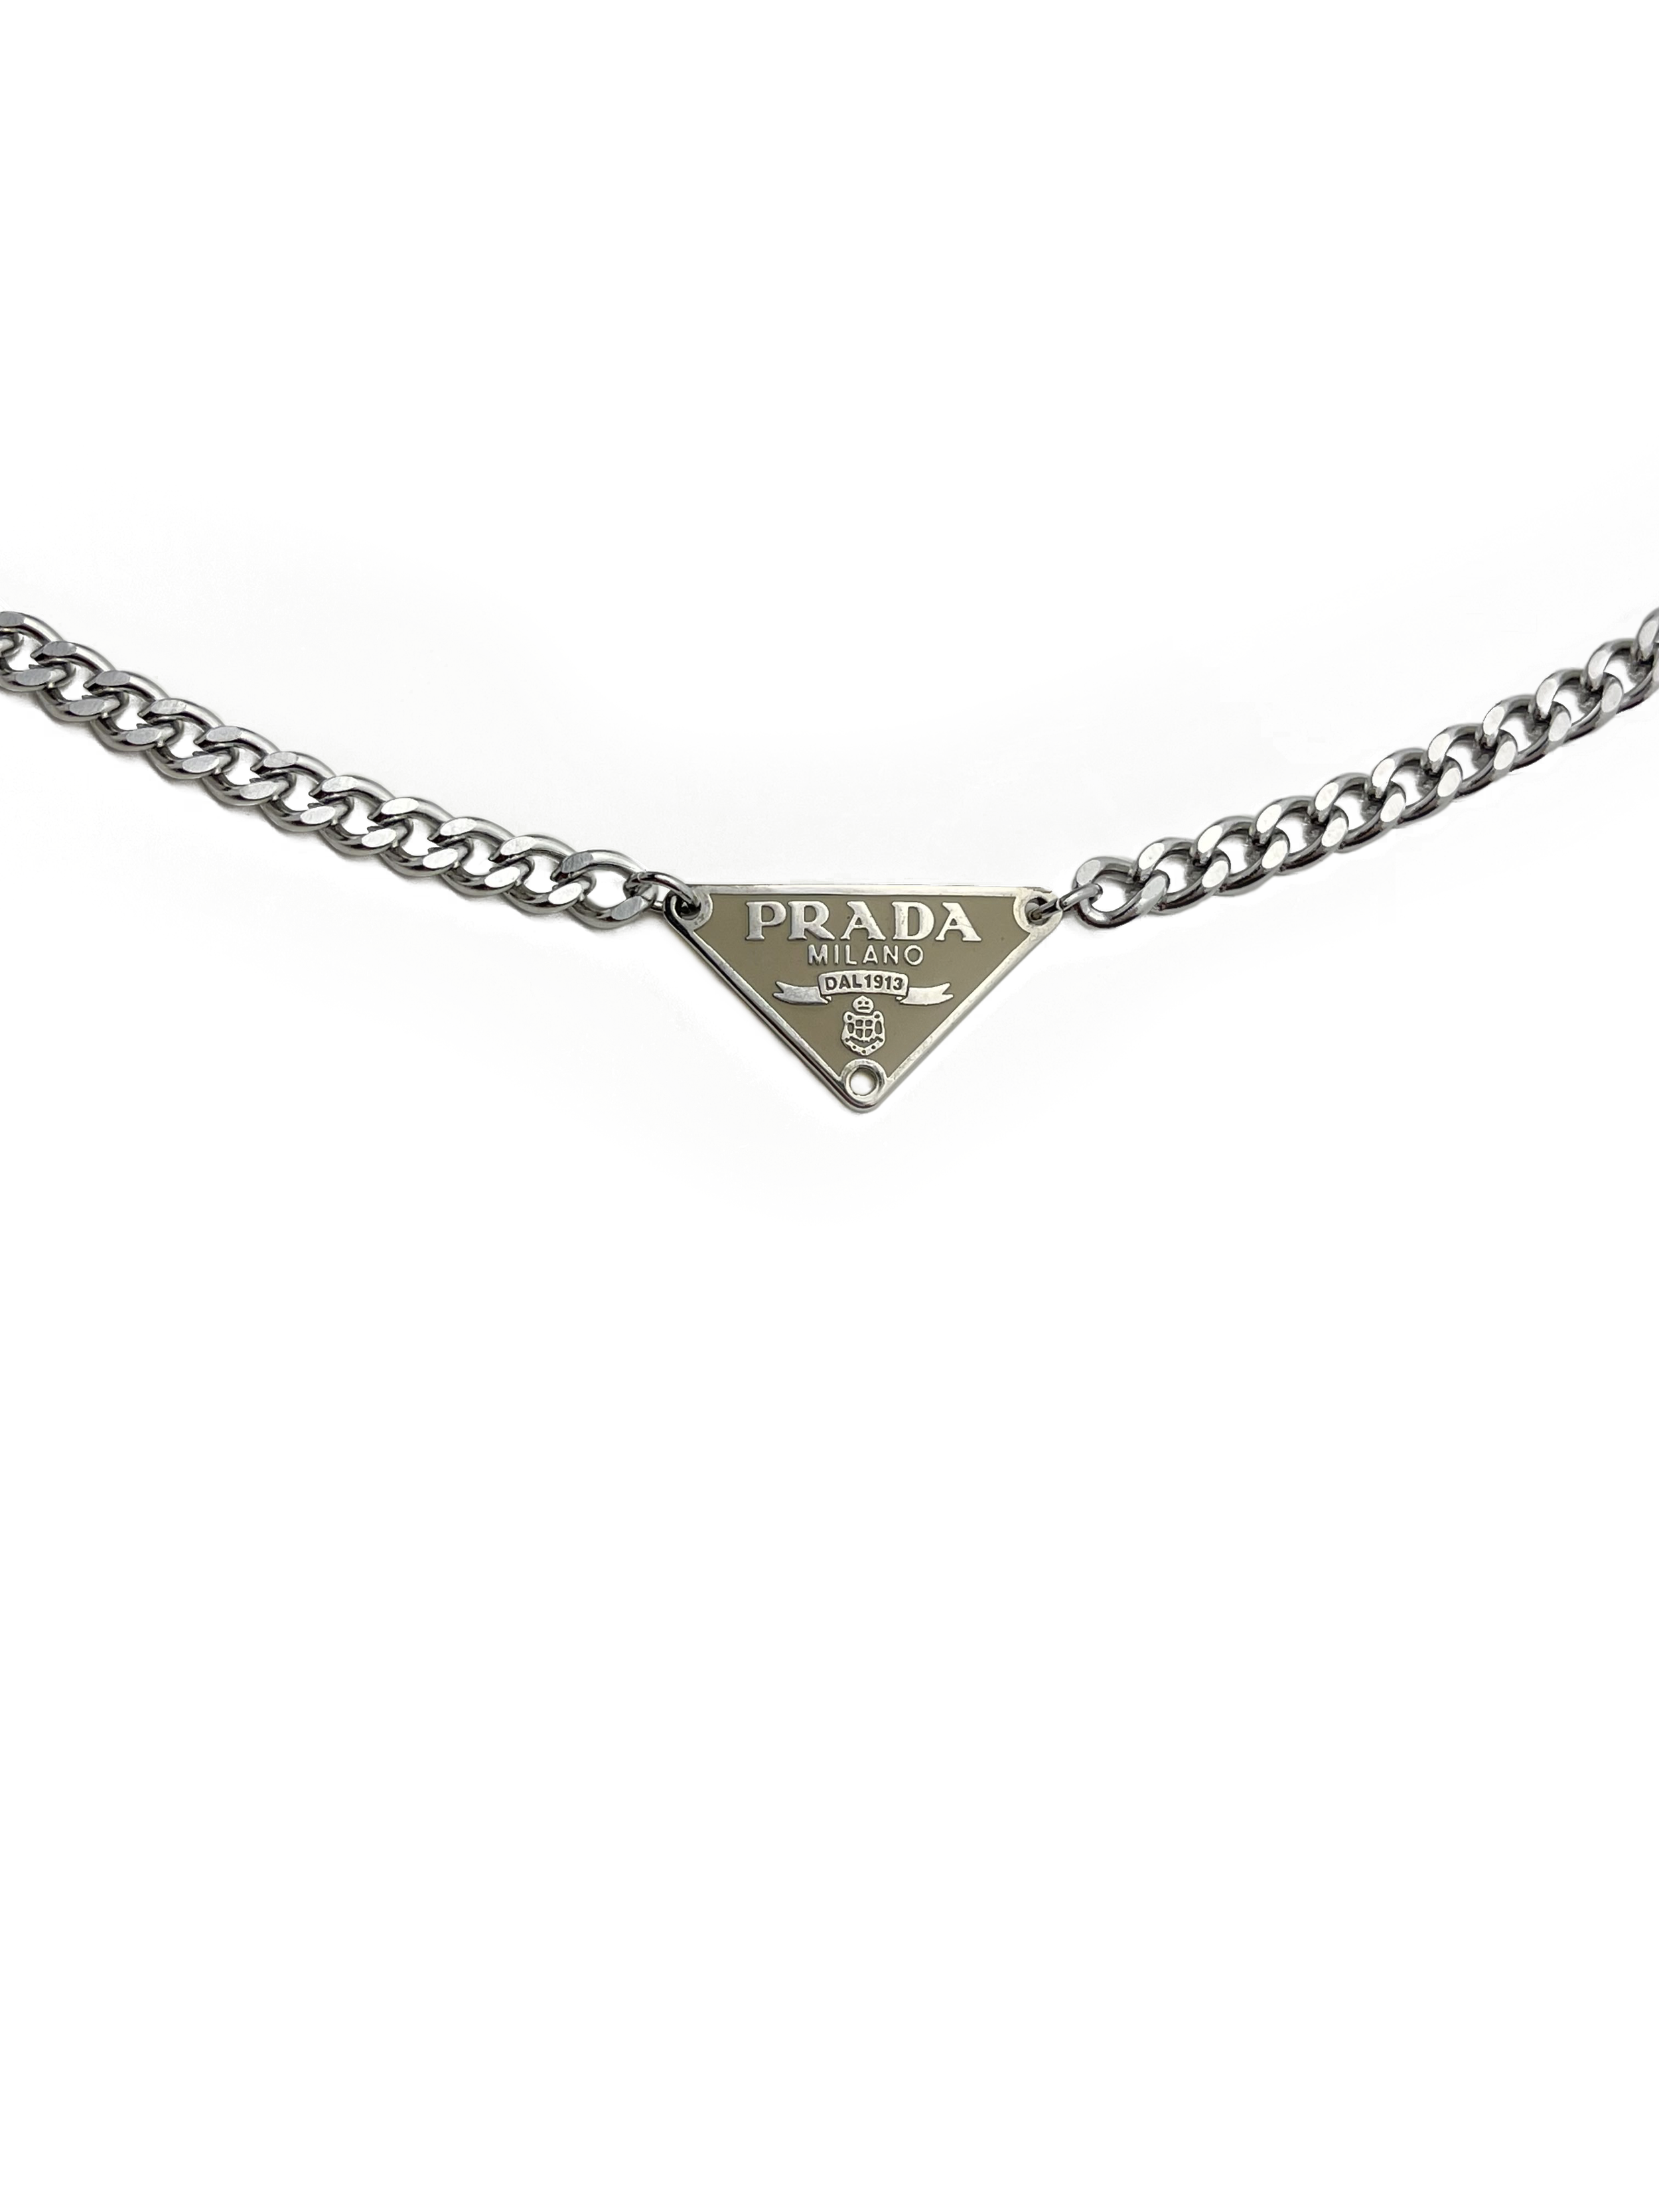 Prada | Jewelry | Authentic Black Gold Prada Necklace | Poshmark